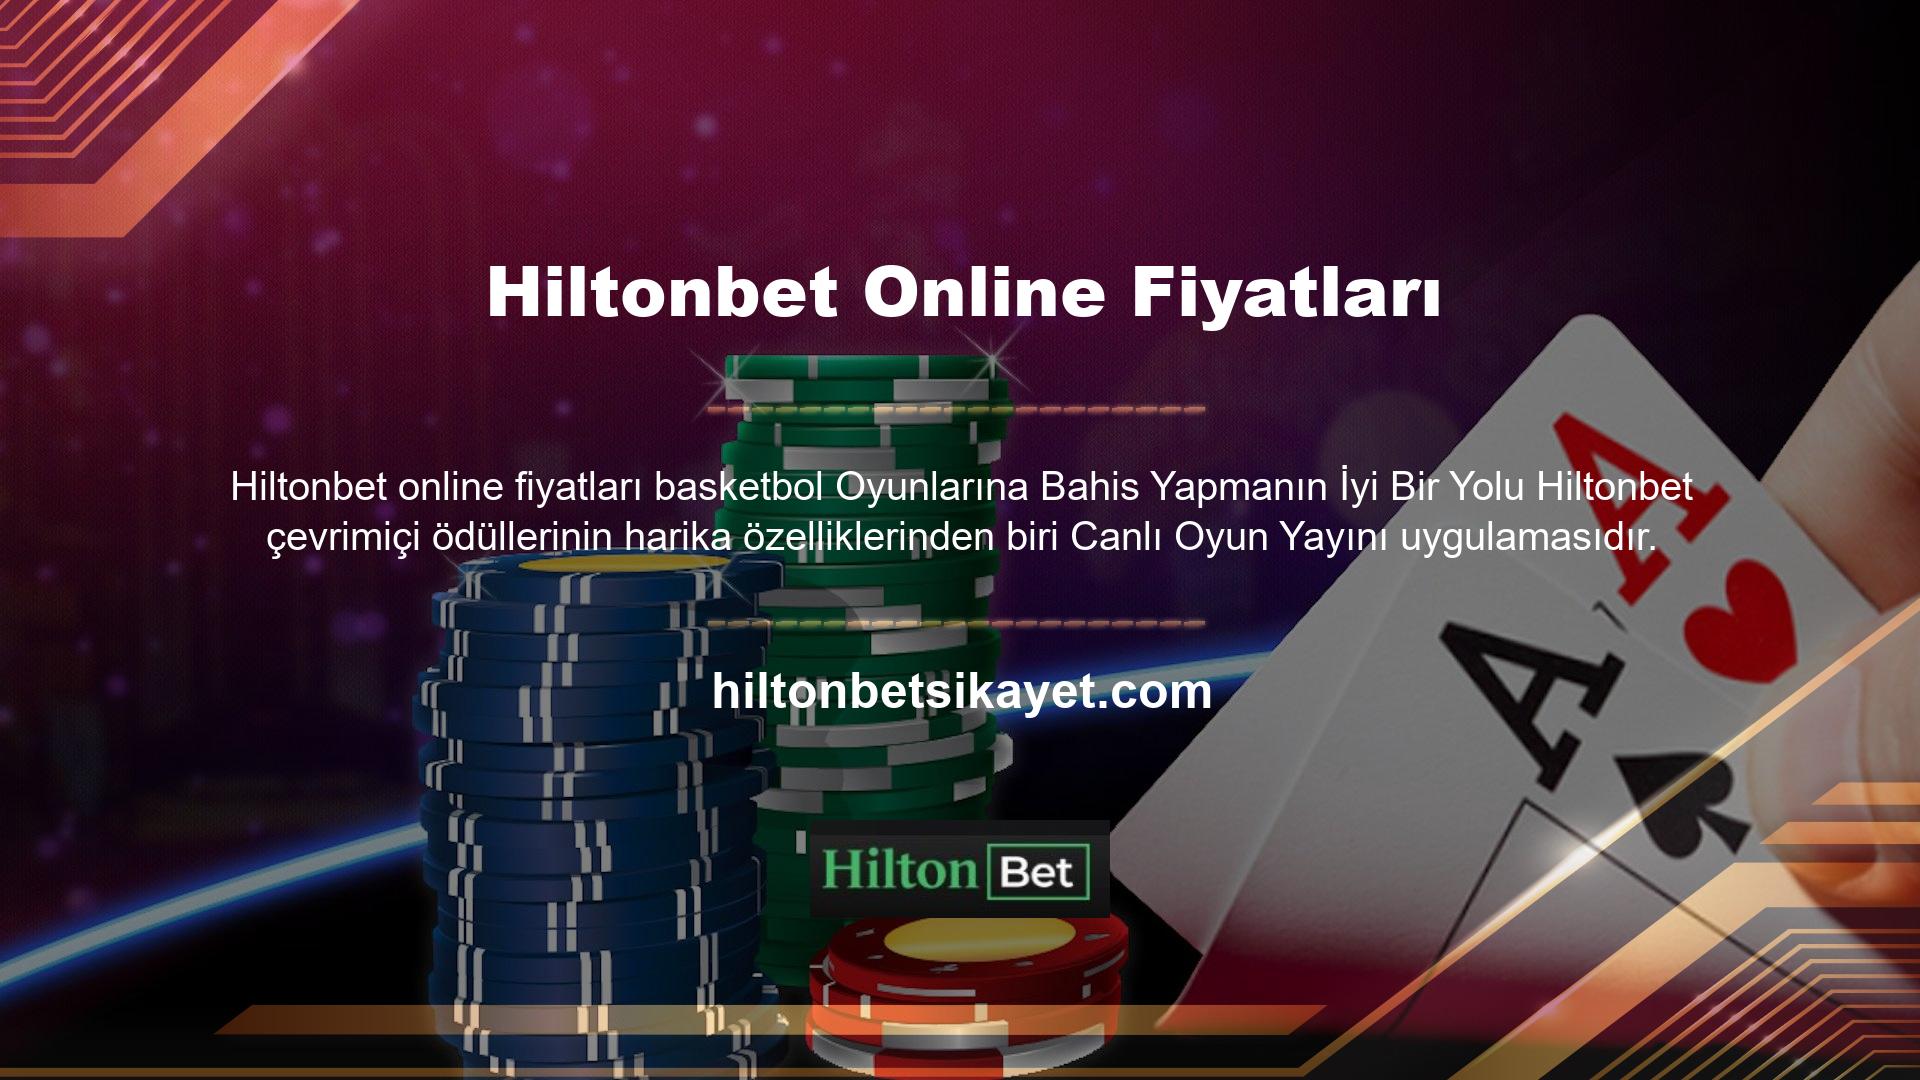 Çevrimiçi casino sitelerinde, canlı oyunları izlemenizi sağlayan TV uygulamaları bulunur